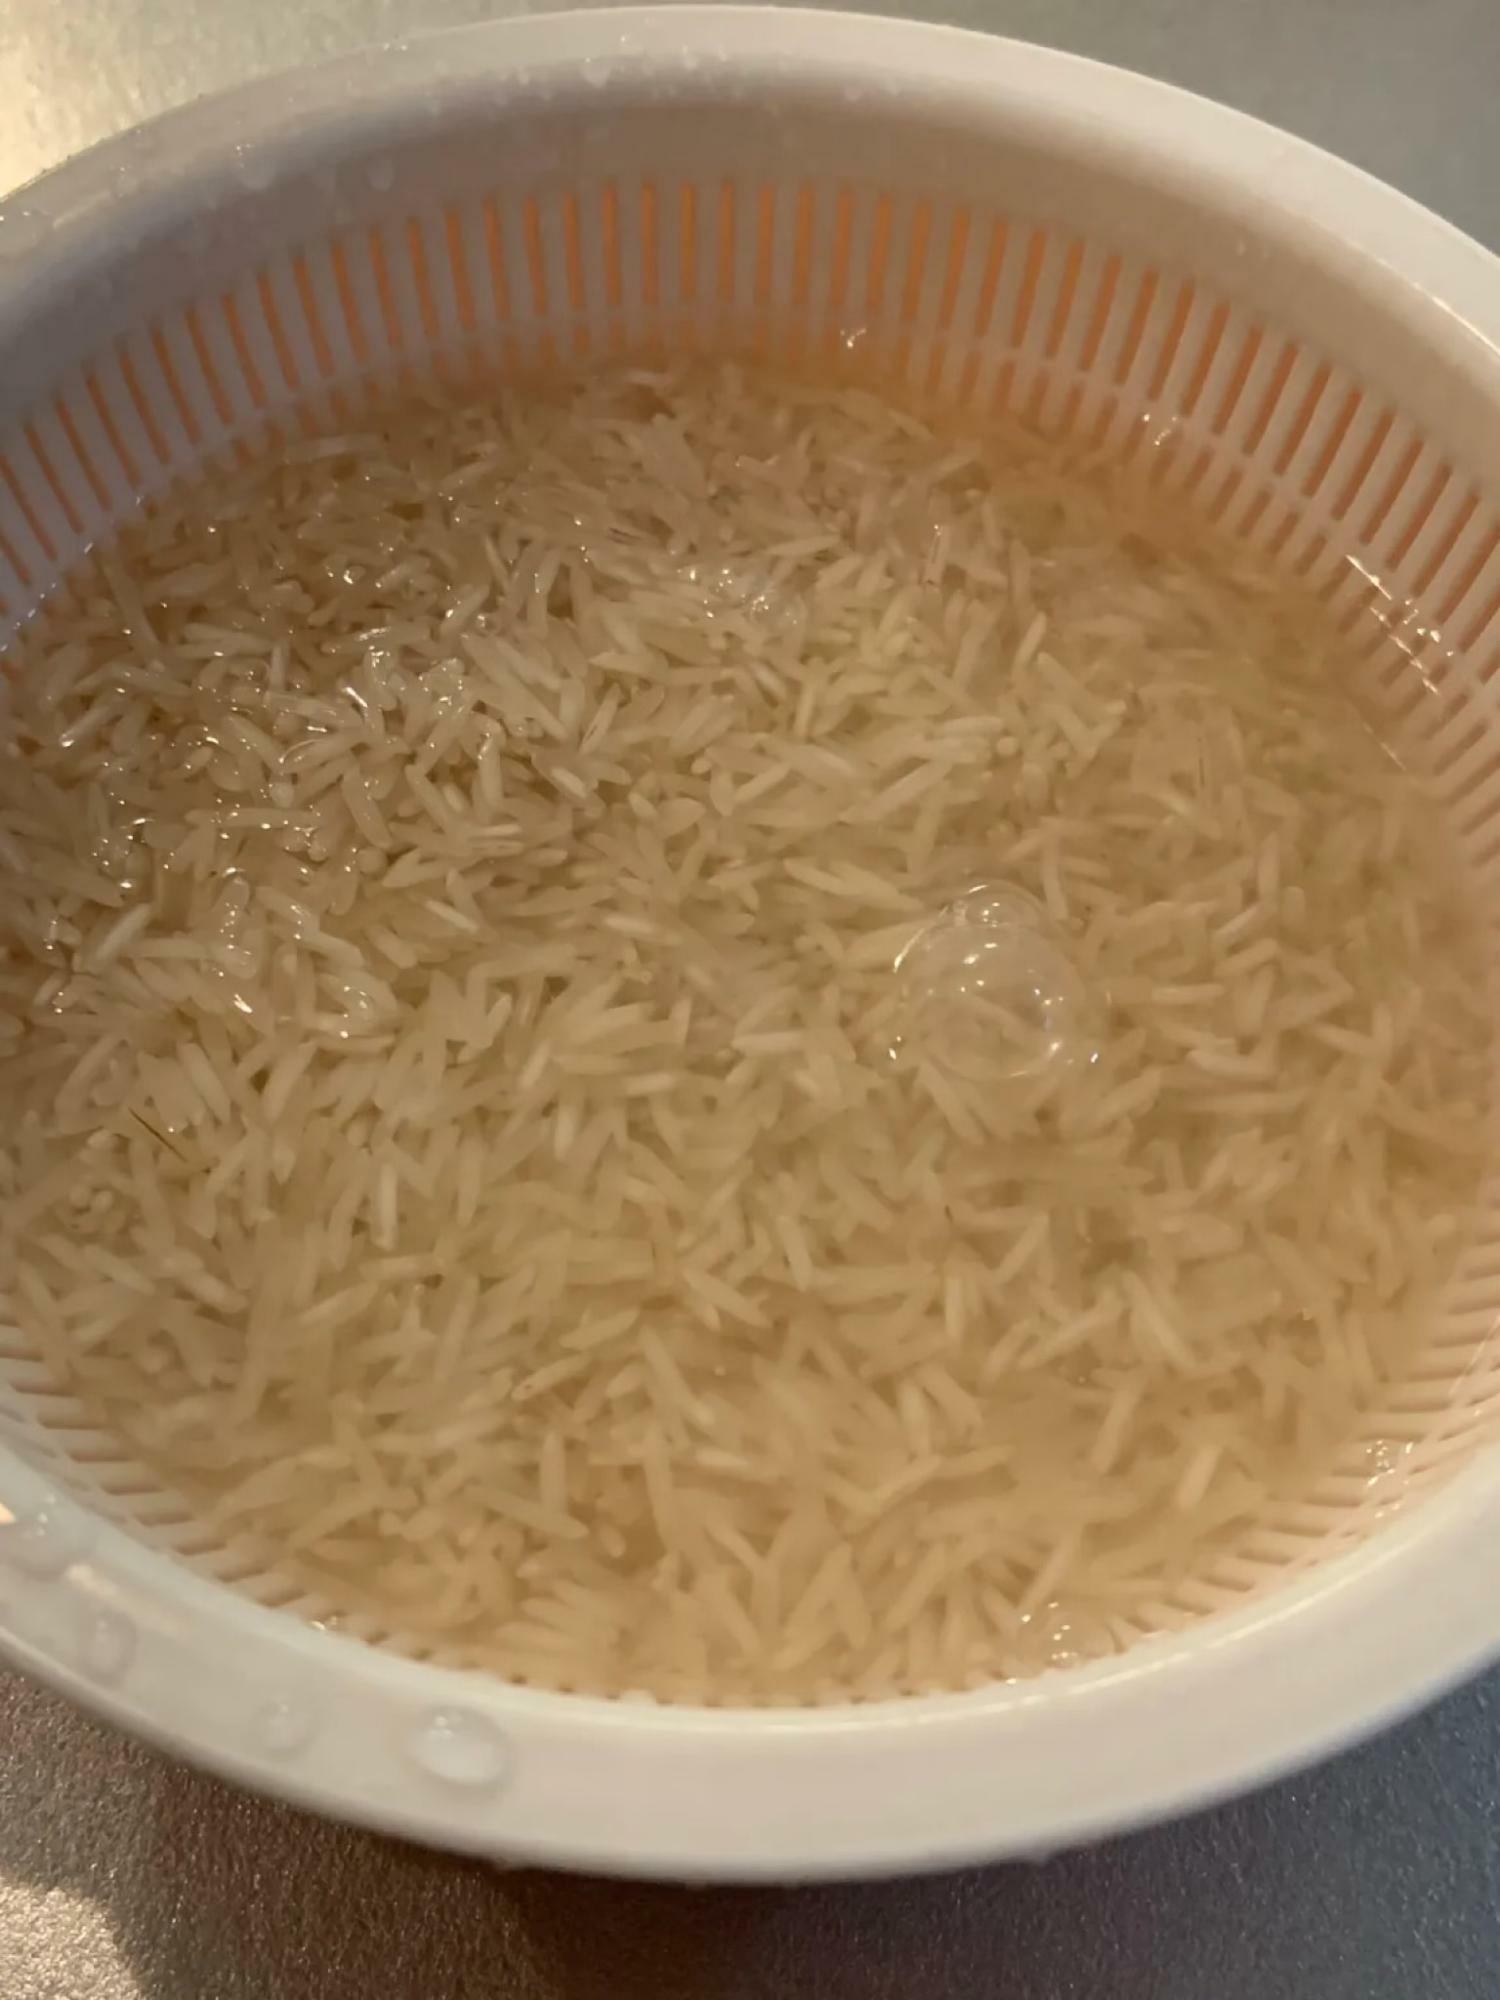 米を研ぐのではなく、表面の汚れを取る程度で洗います。